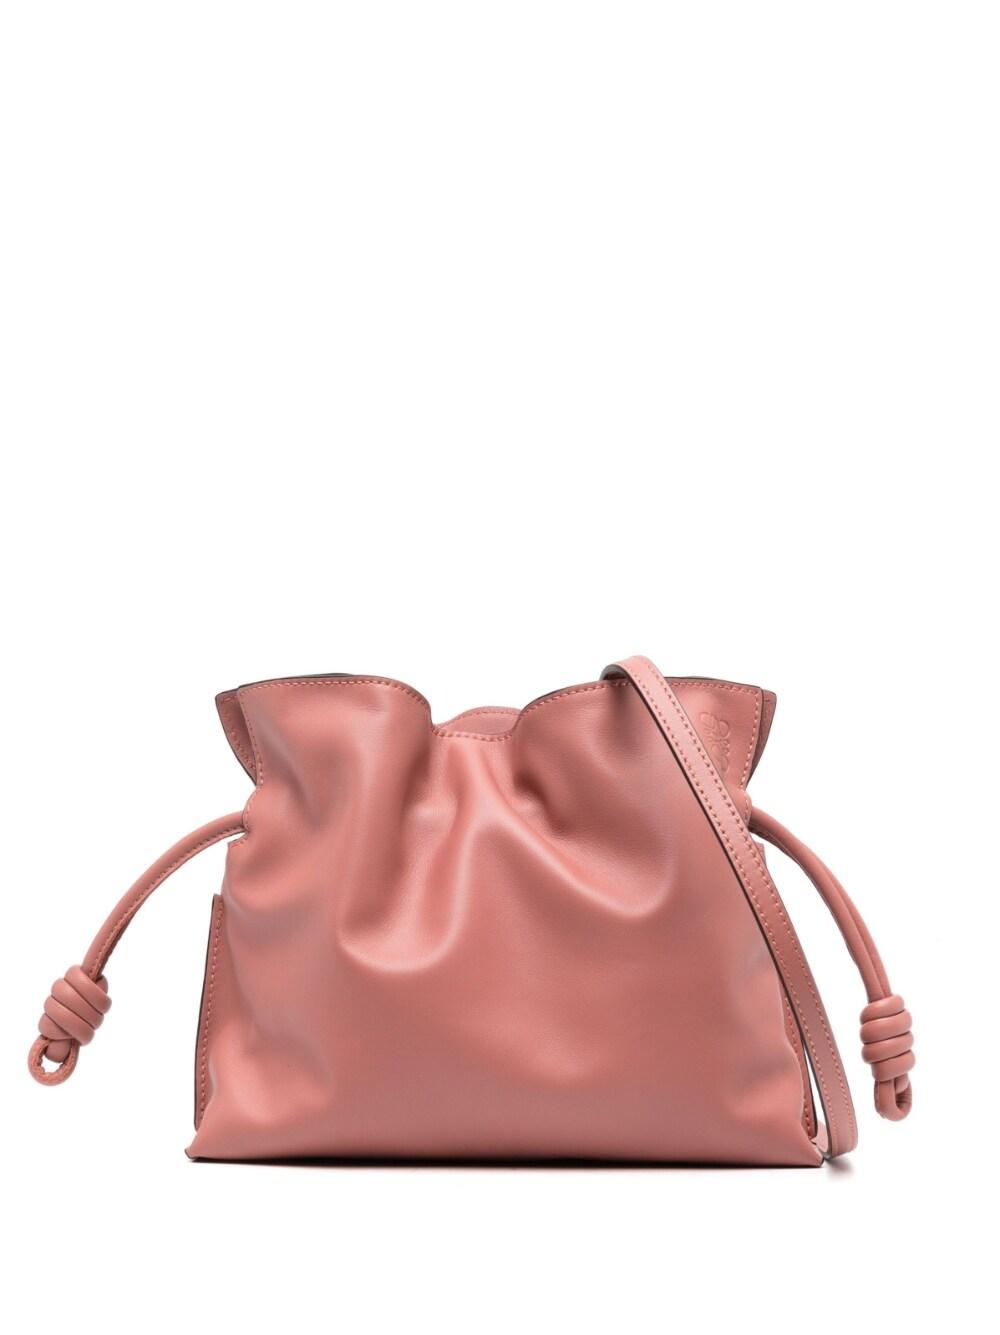 Loewe Flamenco Mini Leather Clutch Bag in Pink | Lyst